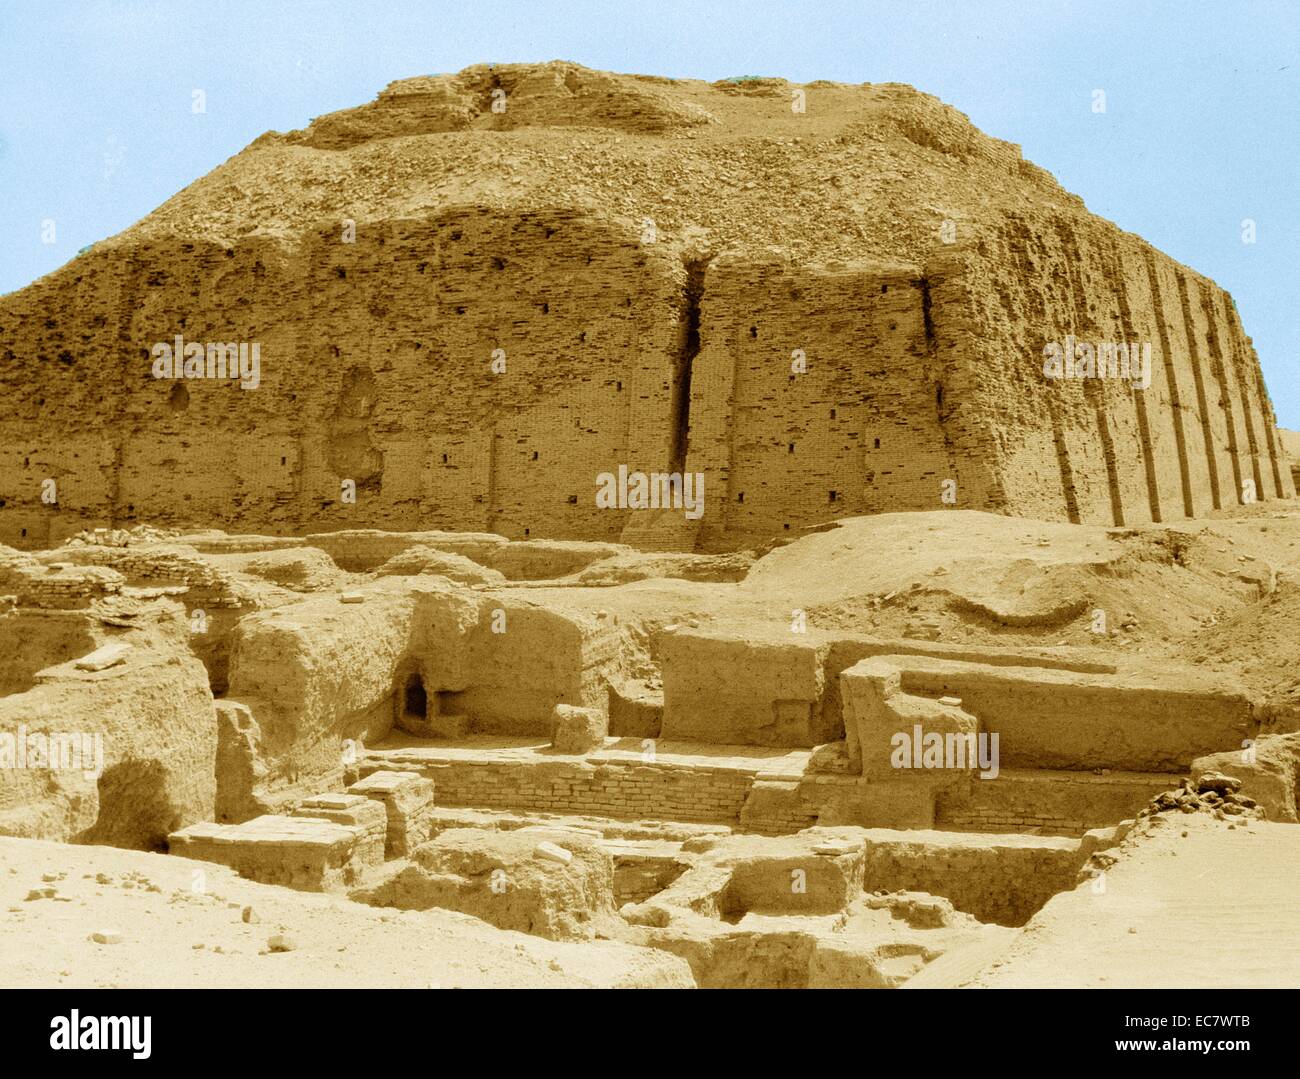 La facciata ricostruita del Neo-Sumerian grande Ziggurat di Ur, vicino a Nassiriya in Iraq. Ziggurat erano stati costruiti dai Sumeri, Babilonesi, Elamiti, Acadians e assiri per religioni locali. Ogni ziggurat era parte di un tempio complesso che comprendeva altri edifici. I precursori degli ziggurat sono state sollevate le piattaforme che data dal periodo Ubaid[1] durante il IV millennio a.c. Le prime ziggurat ha iniziato nei pressi della fine dell'inizio periodo dinastico.[2] L'ultima ziggurat mesopotamiche data dal VI secolo A.C. Foto Stock